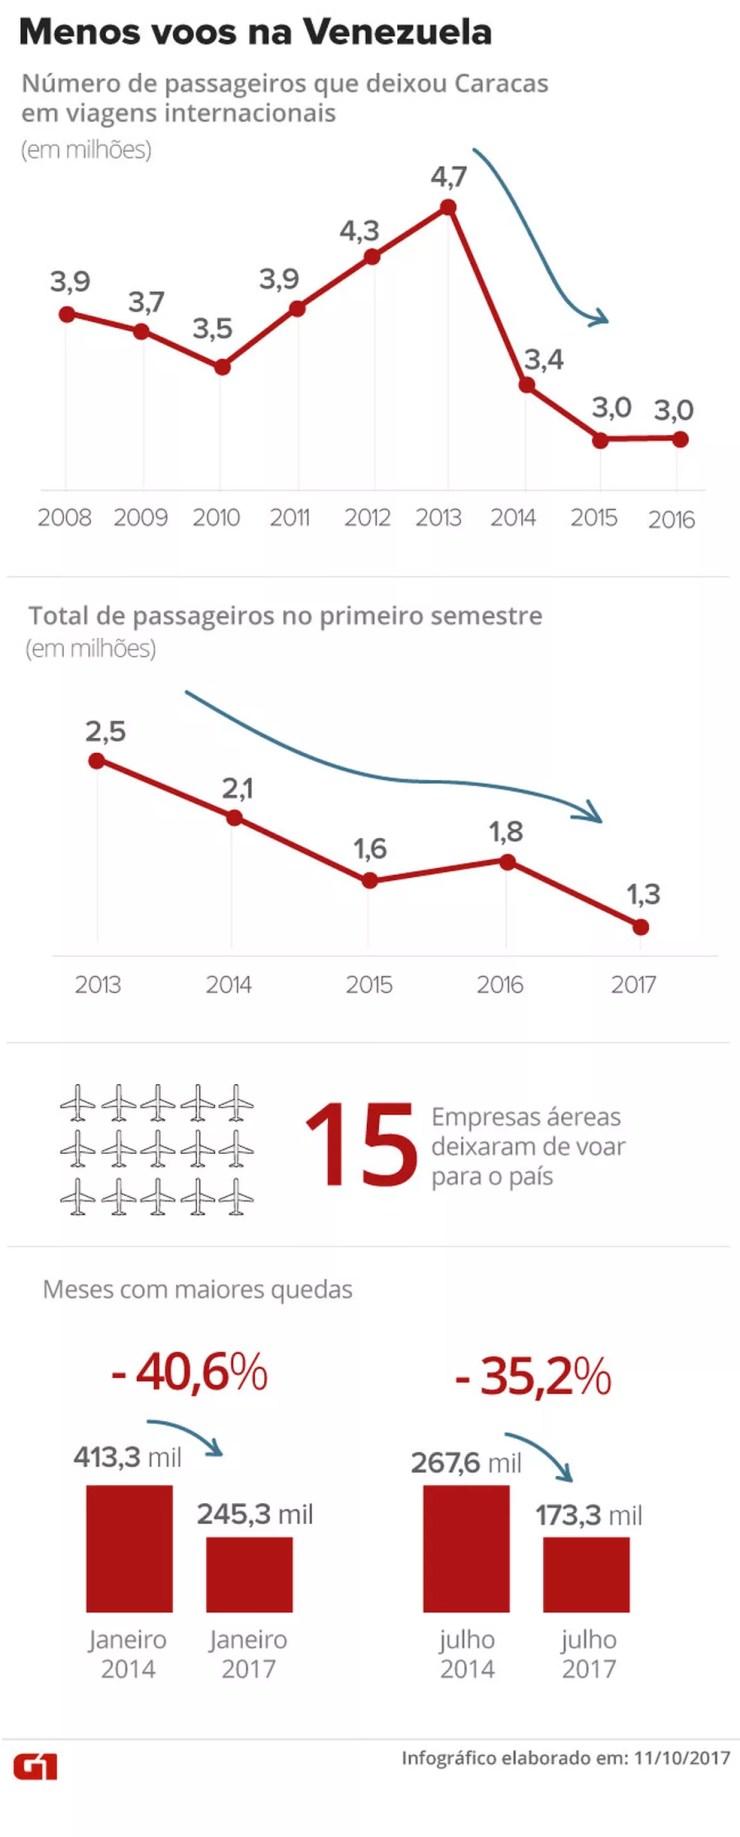 Menos voos na Venezuela: crise política afetou oferta no transporte aéreo (Foto: Arte/G1)